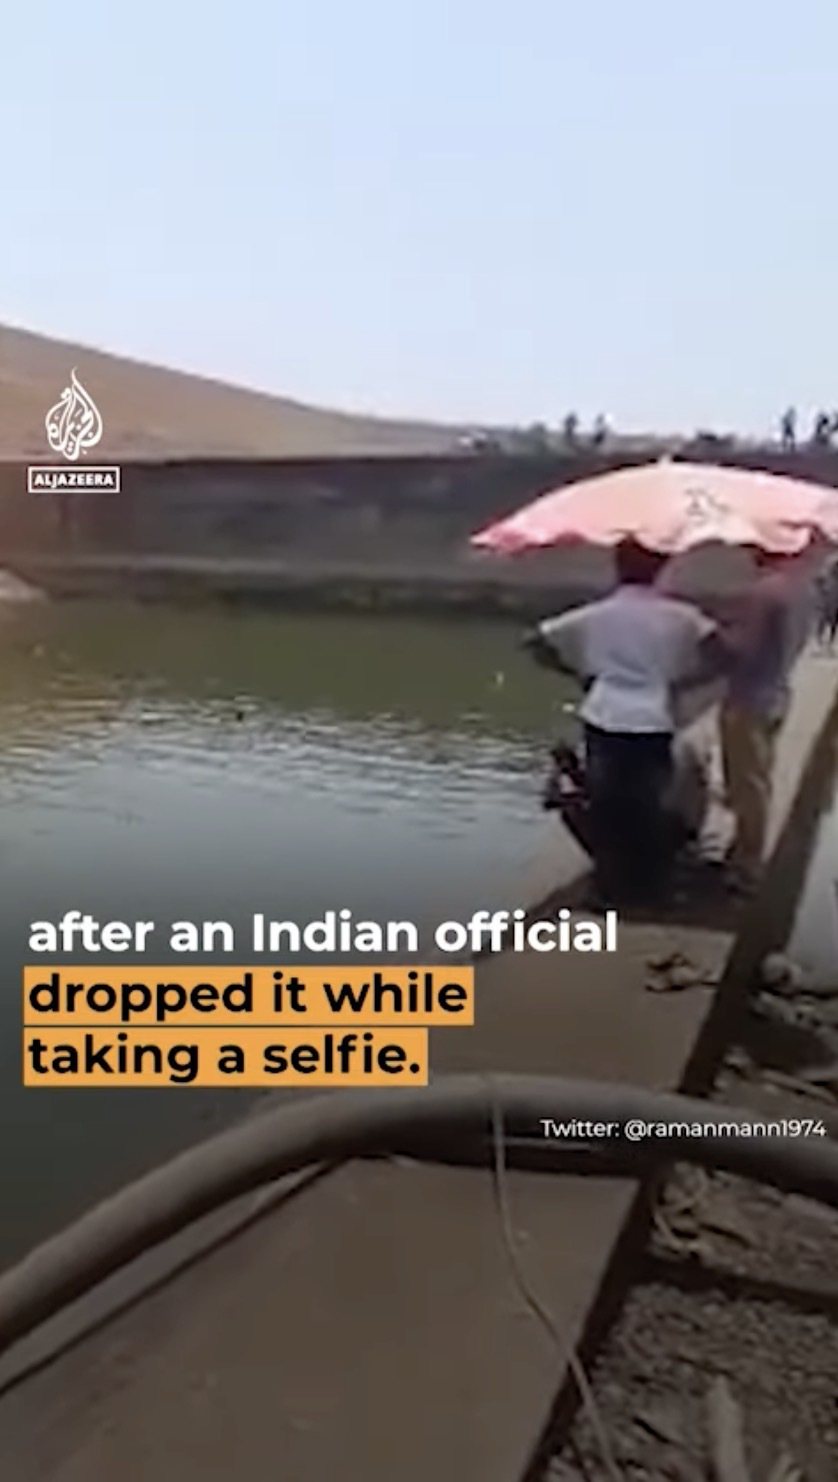 一名印度官員因為手機掉到水壩裡，竟命人將水壩抽乾只為了「找回手機」。翻攝Al Jazeera English頻道